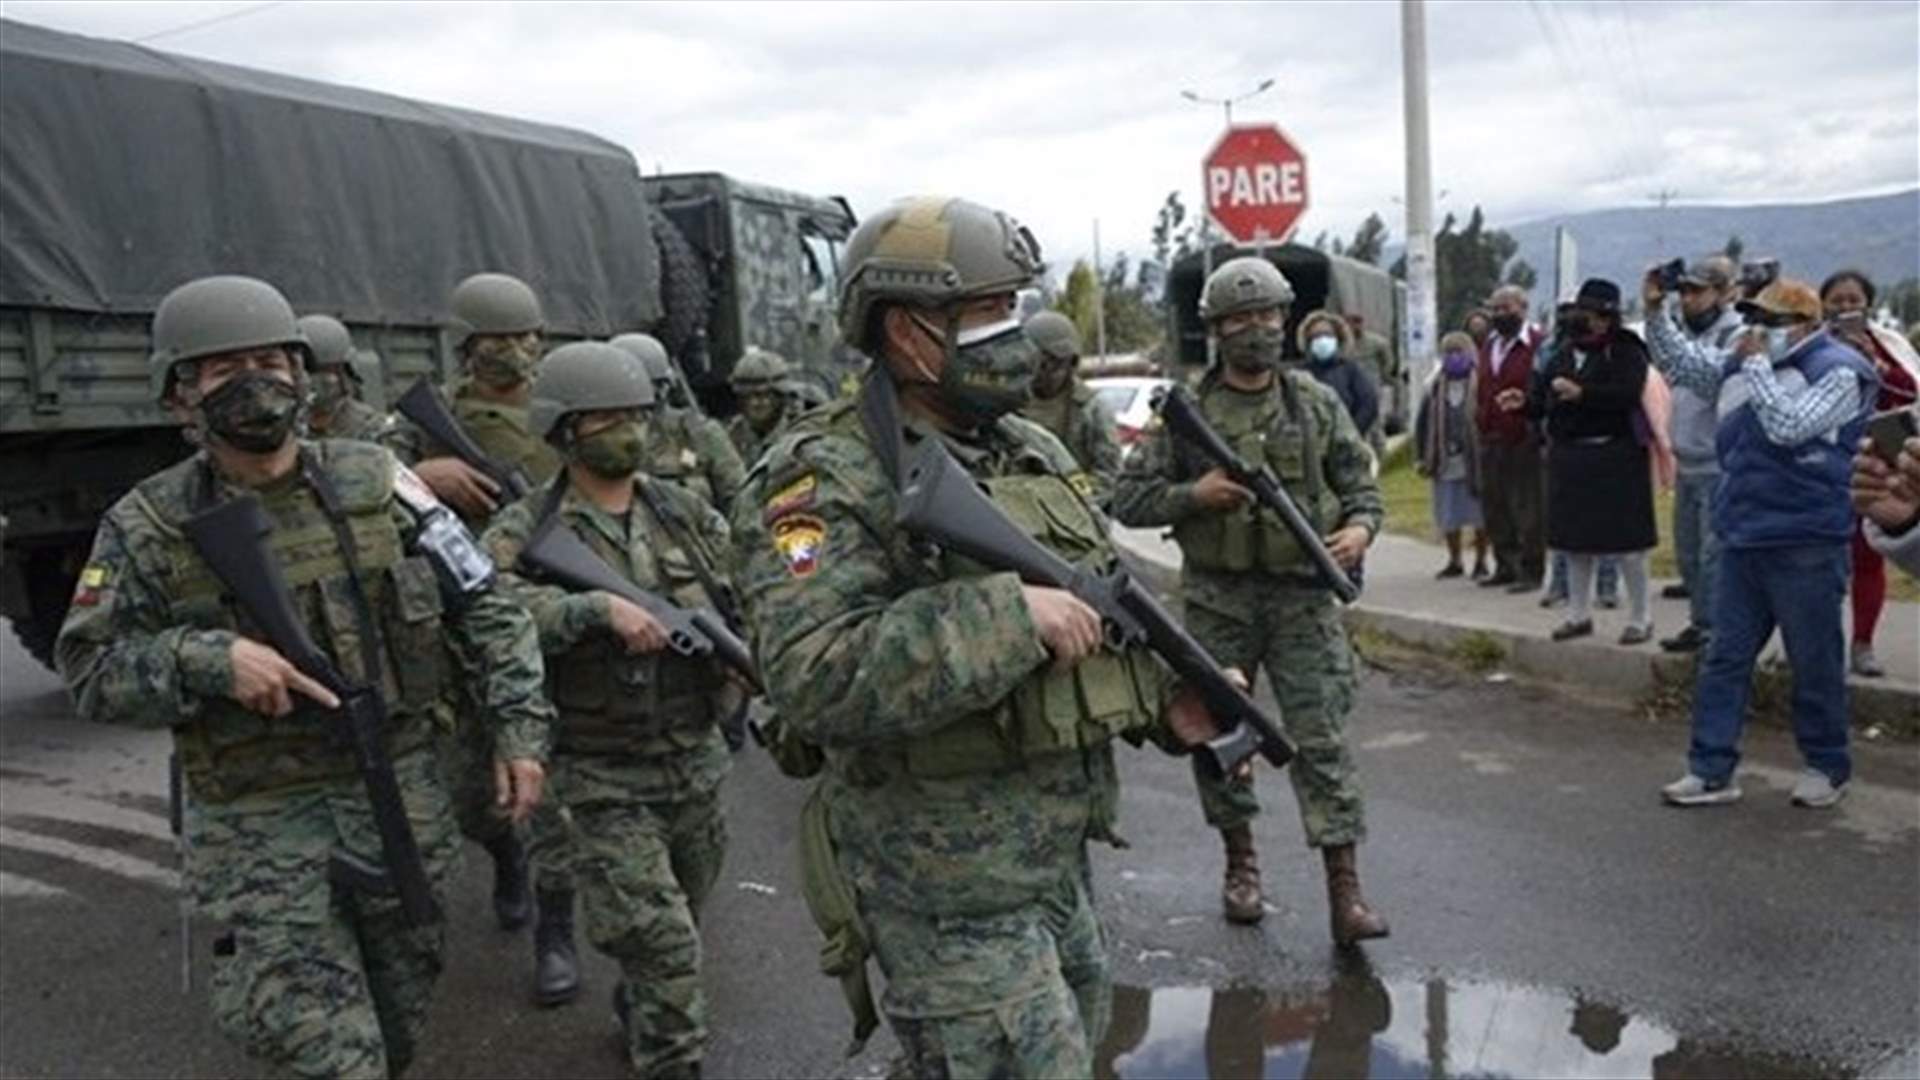 ارتفاع حصيلة أعمال الشغب في سجنين بالإكوادور إلى 27 قتيلا